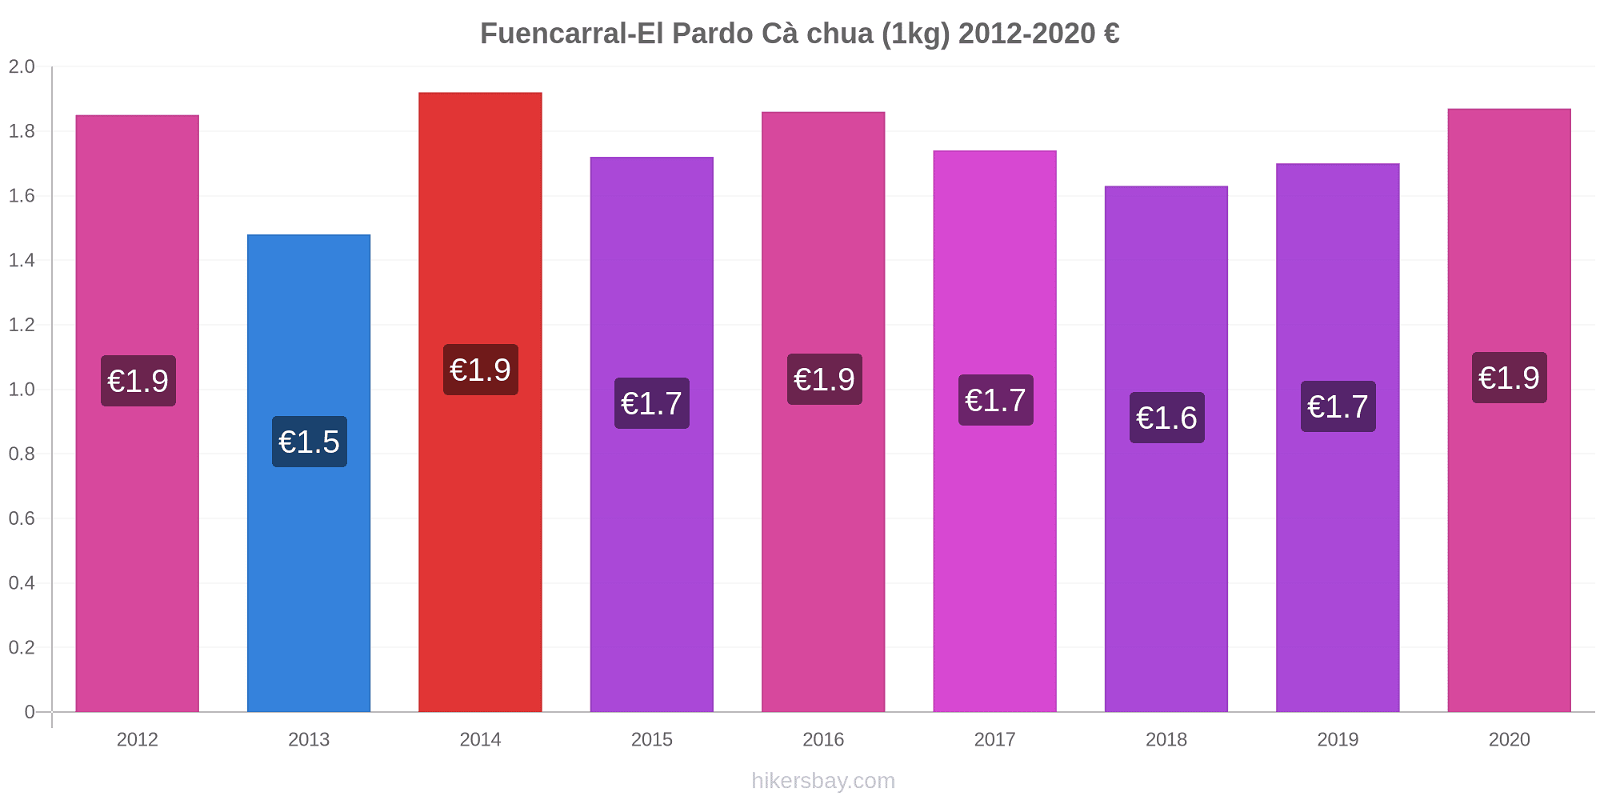 Fuencarral-El Pardo thay đổi giá Cà chua (1kg) hikersbay.com